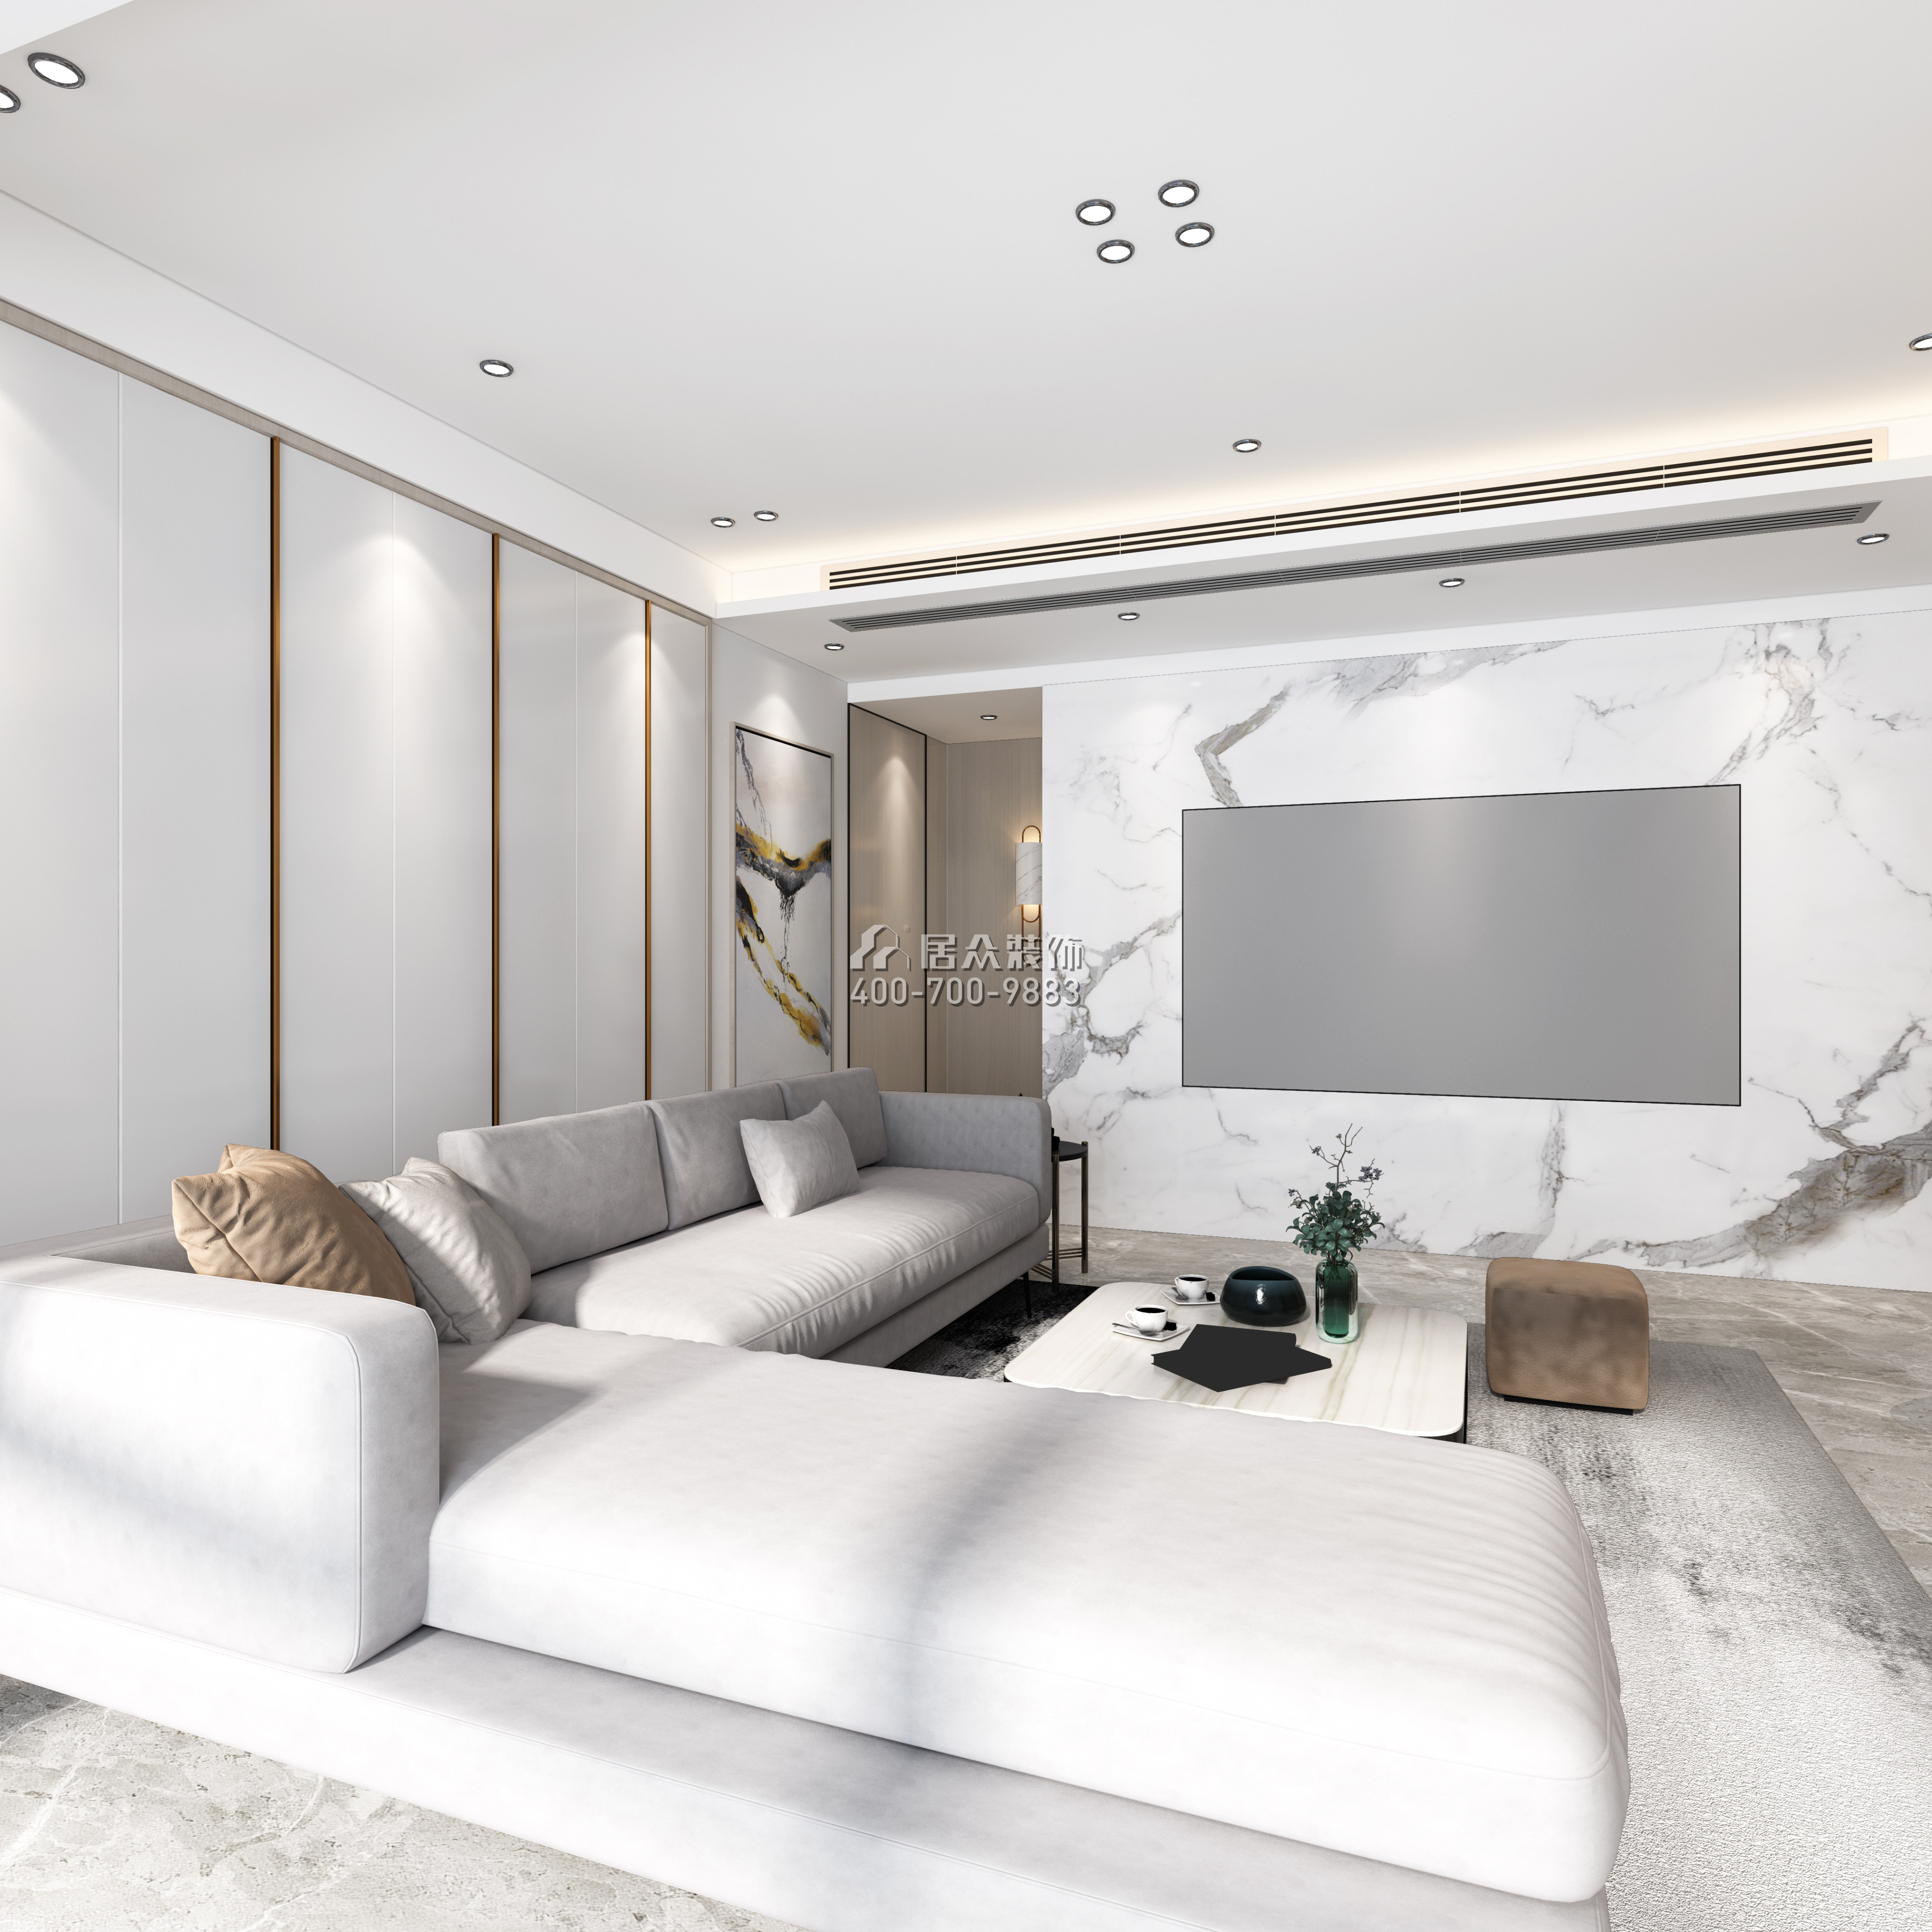 翠湖香山別苑120平方米現代簡約風格平層戶型客廳裝修效果圖